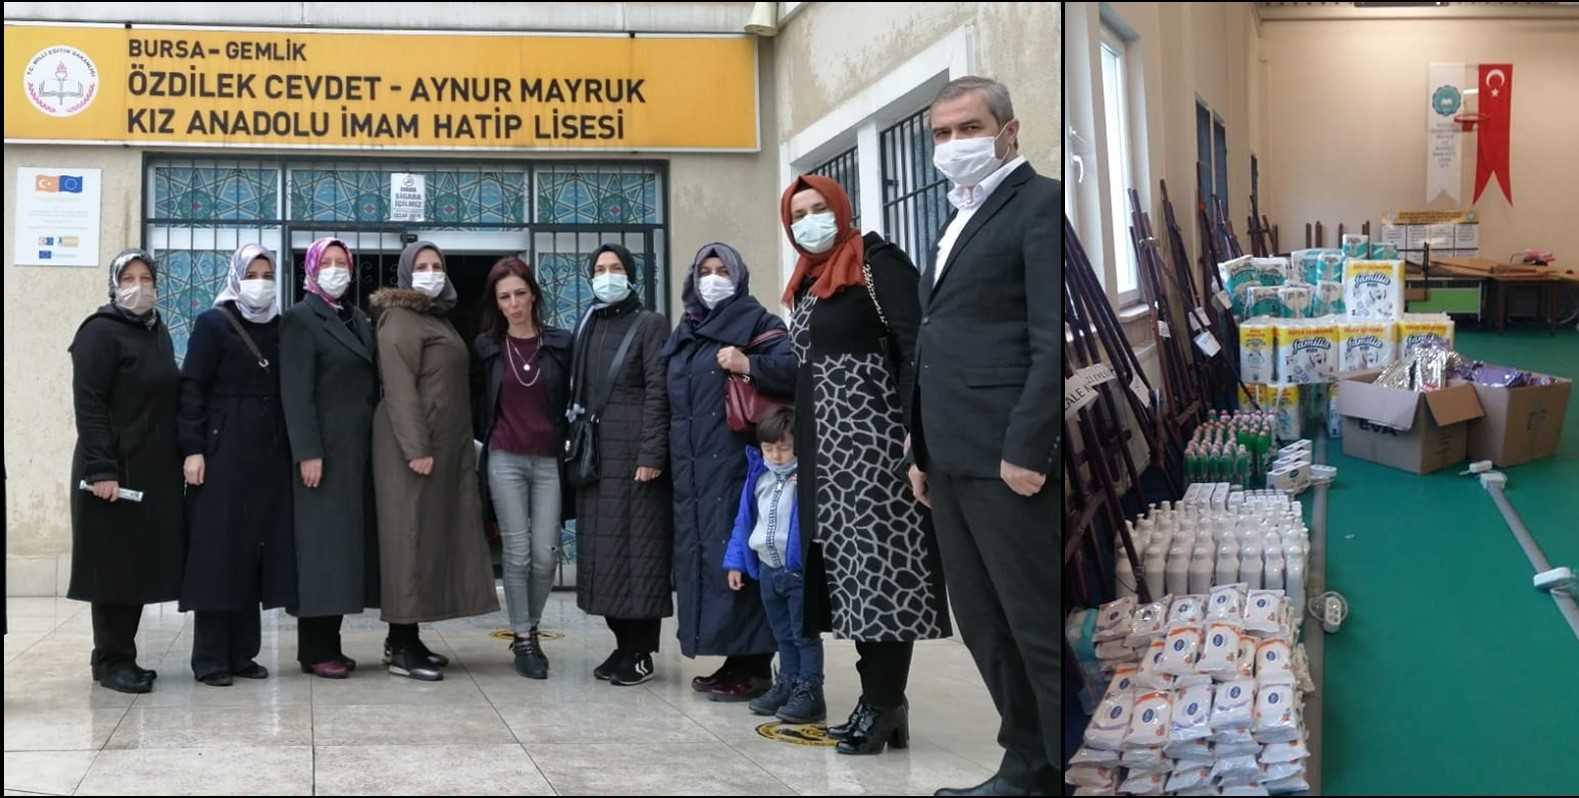 Bursada Gemlikli kadınlar Türkiye’ye örnek oluyorlar